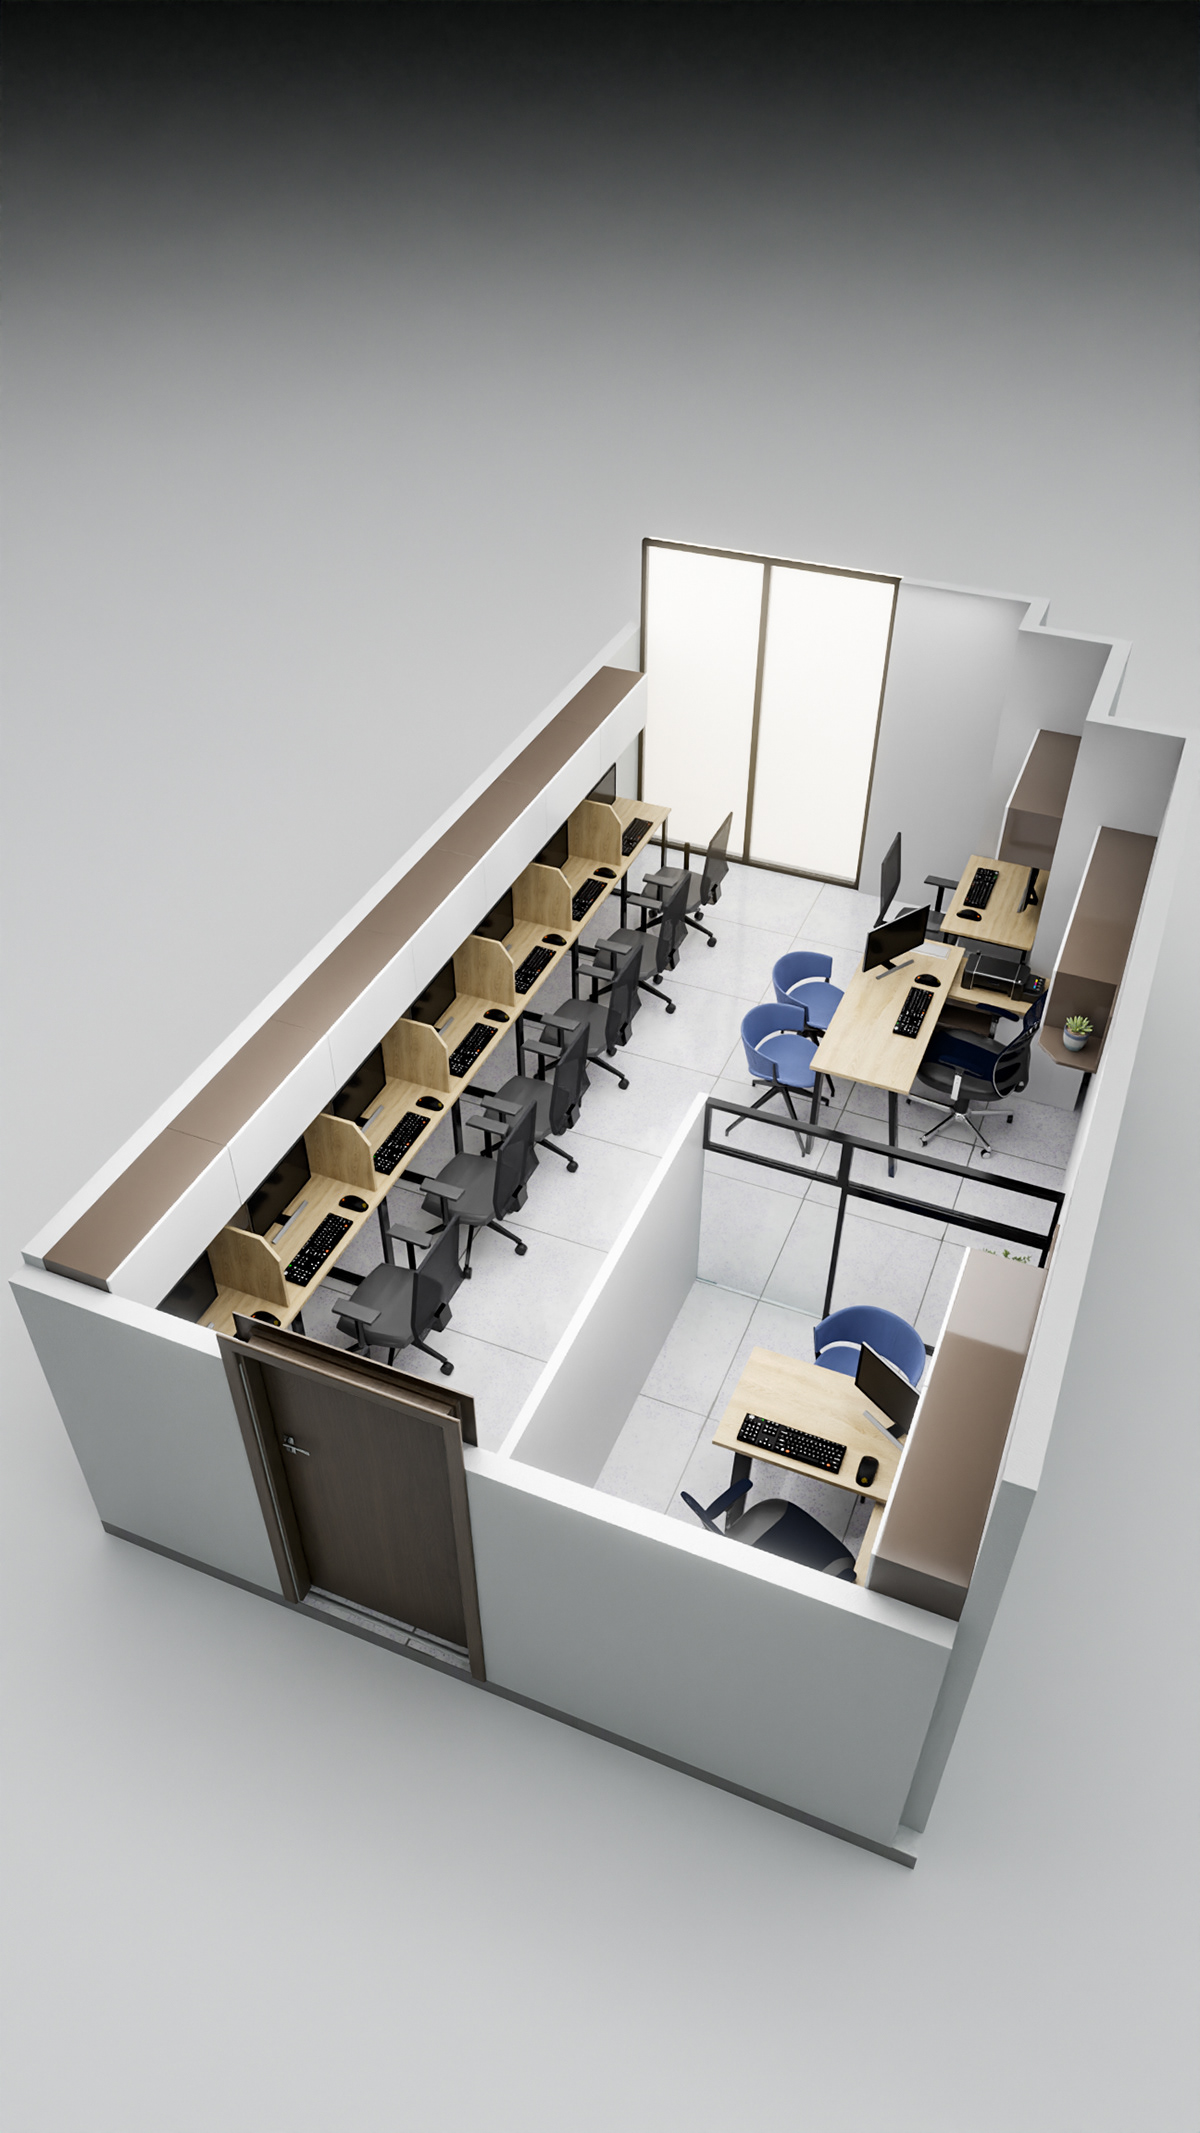 architecture Render 3D blender 3d modeling Office Design furniture interior design  office furniture archviz